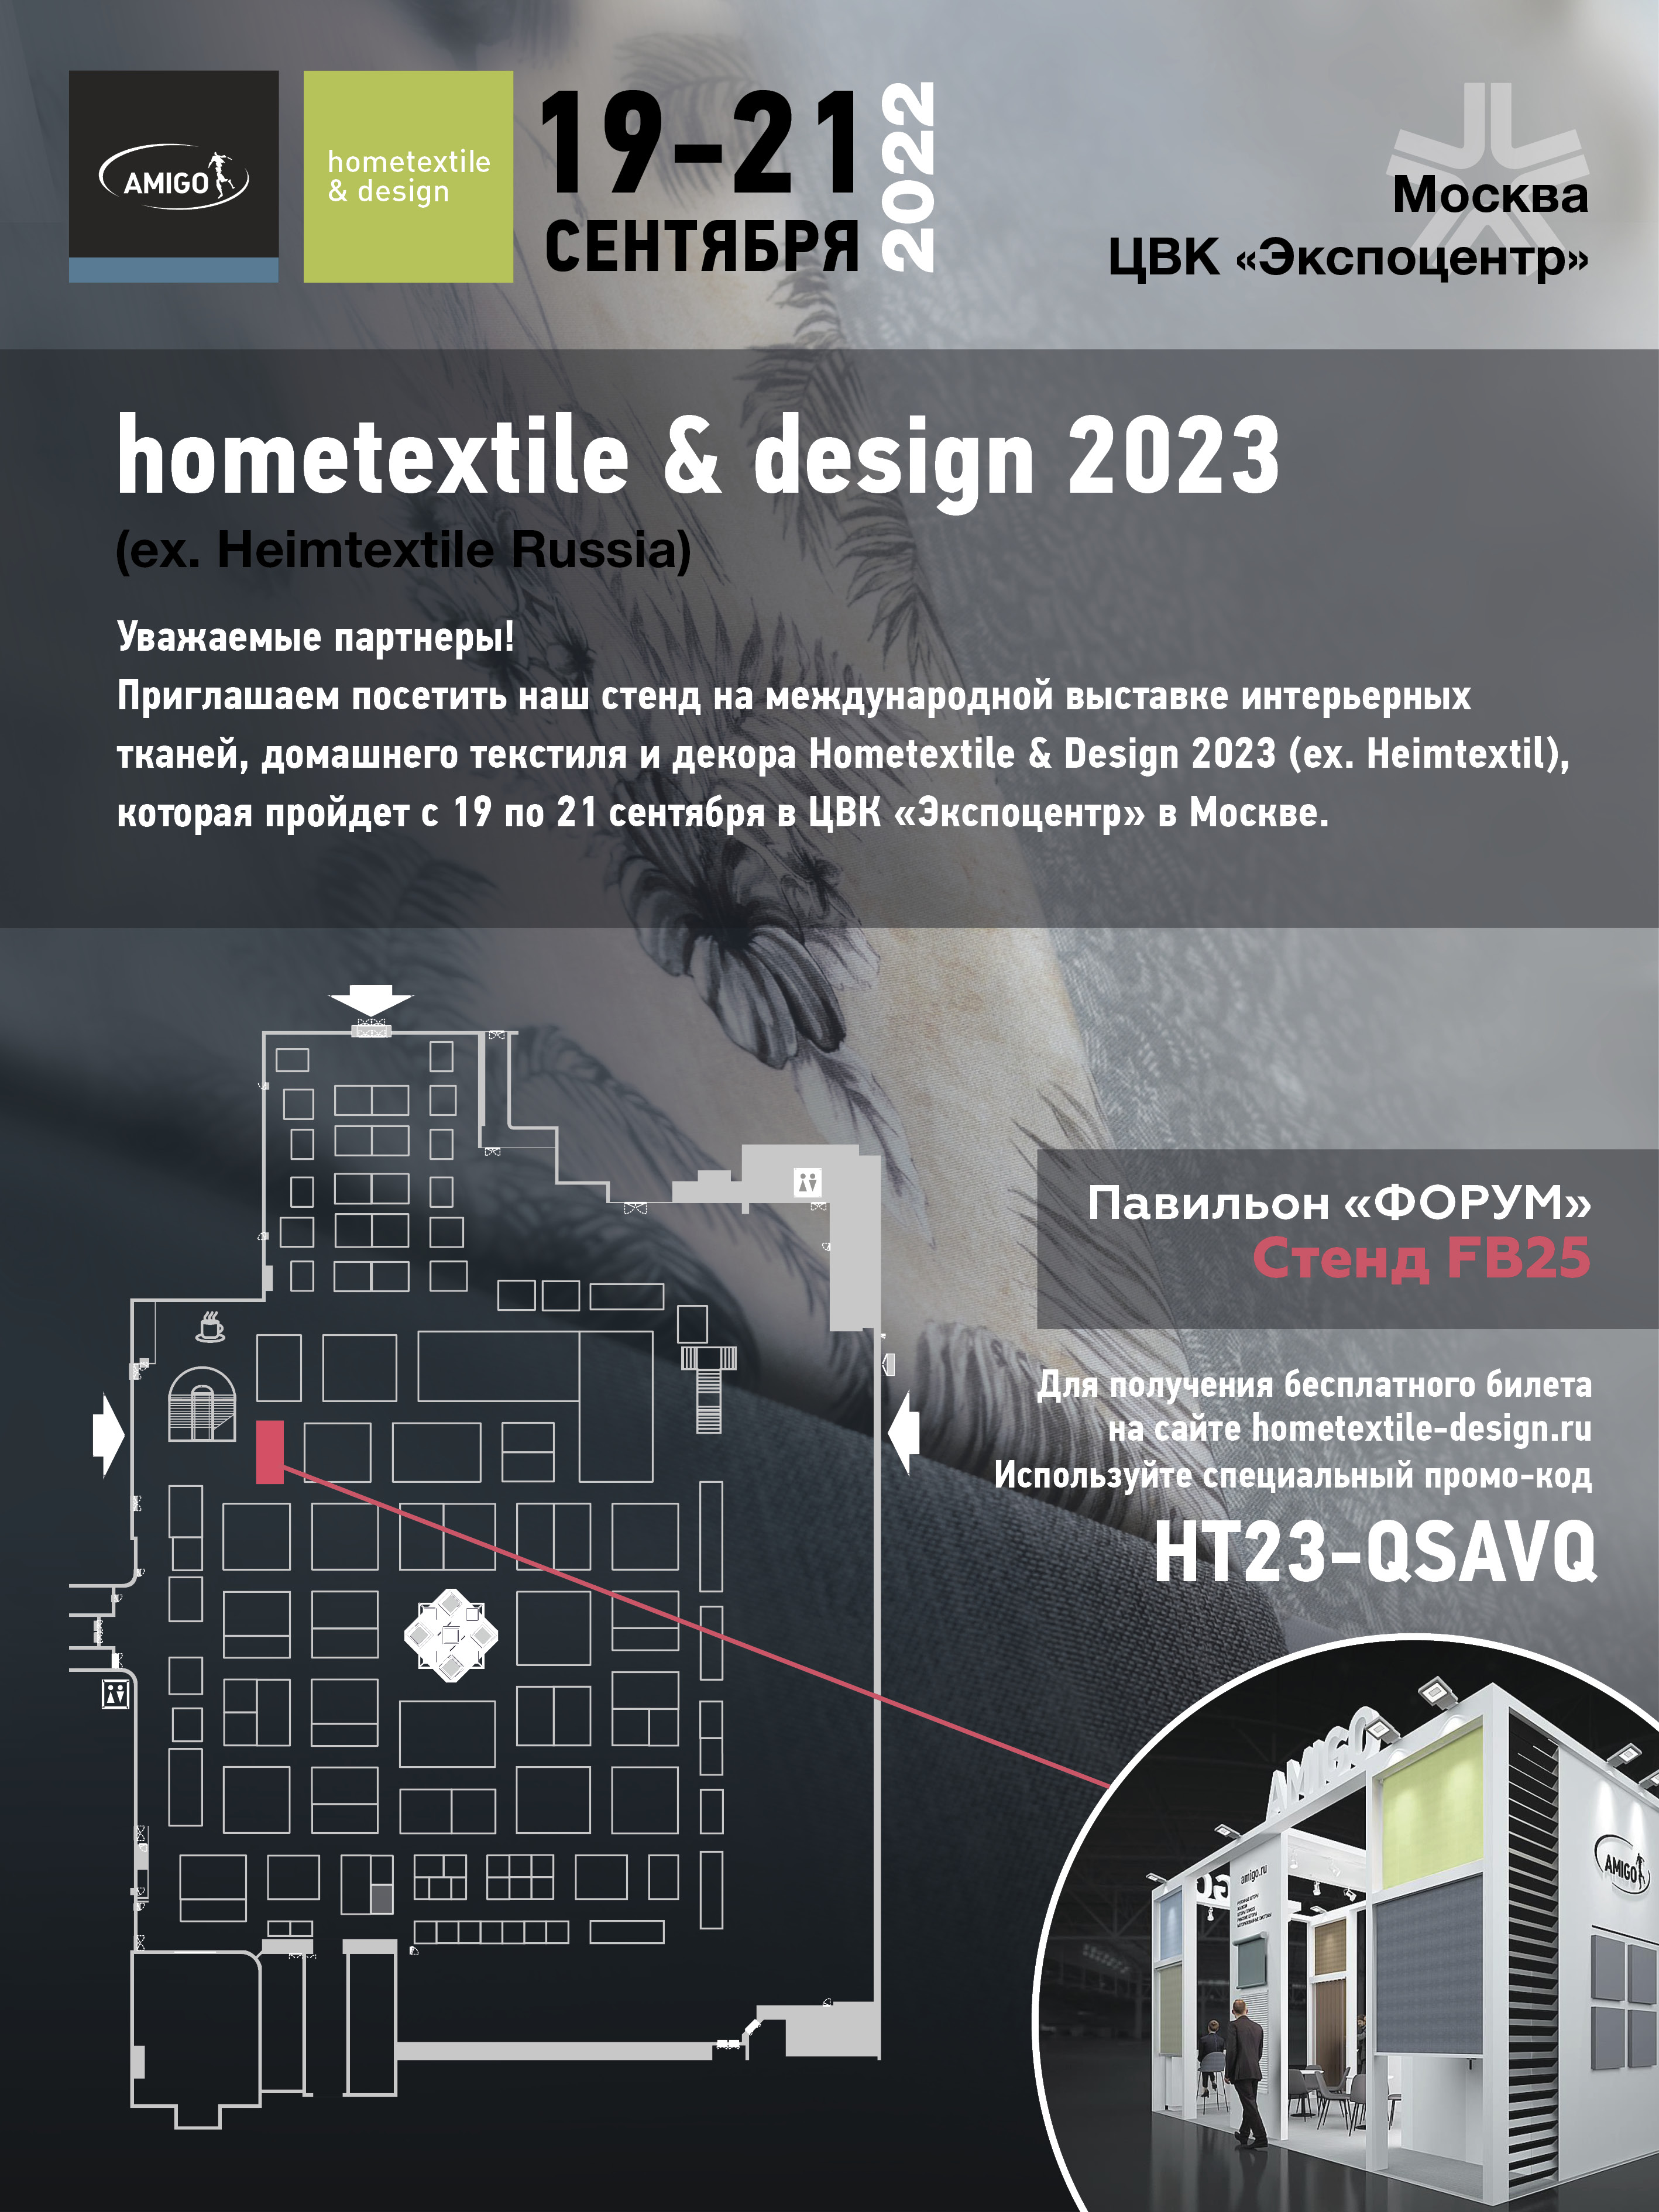 Hometextile & design 2023